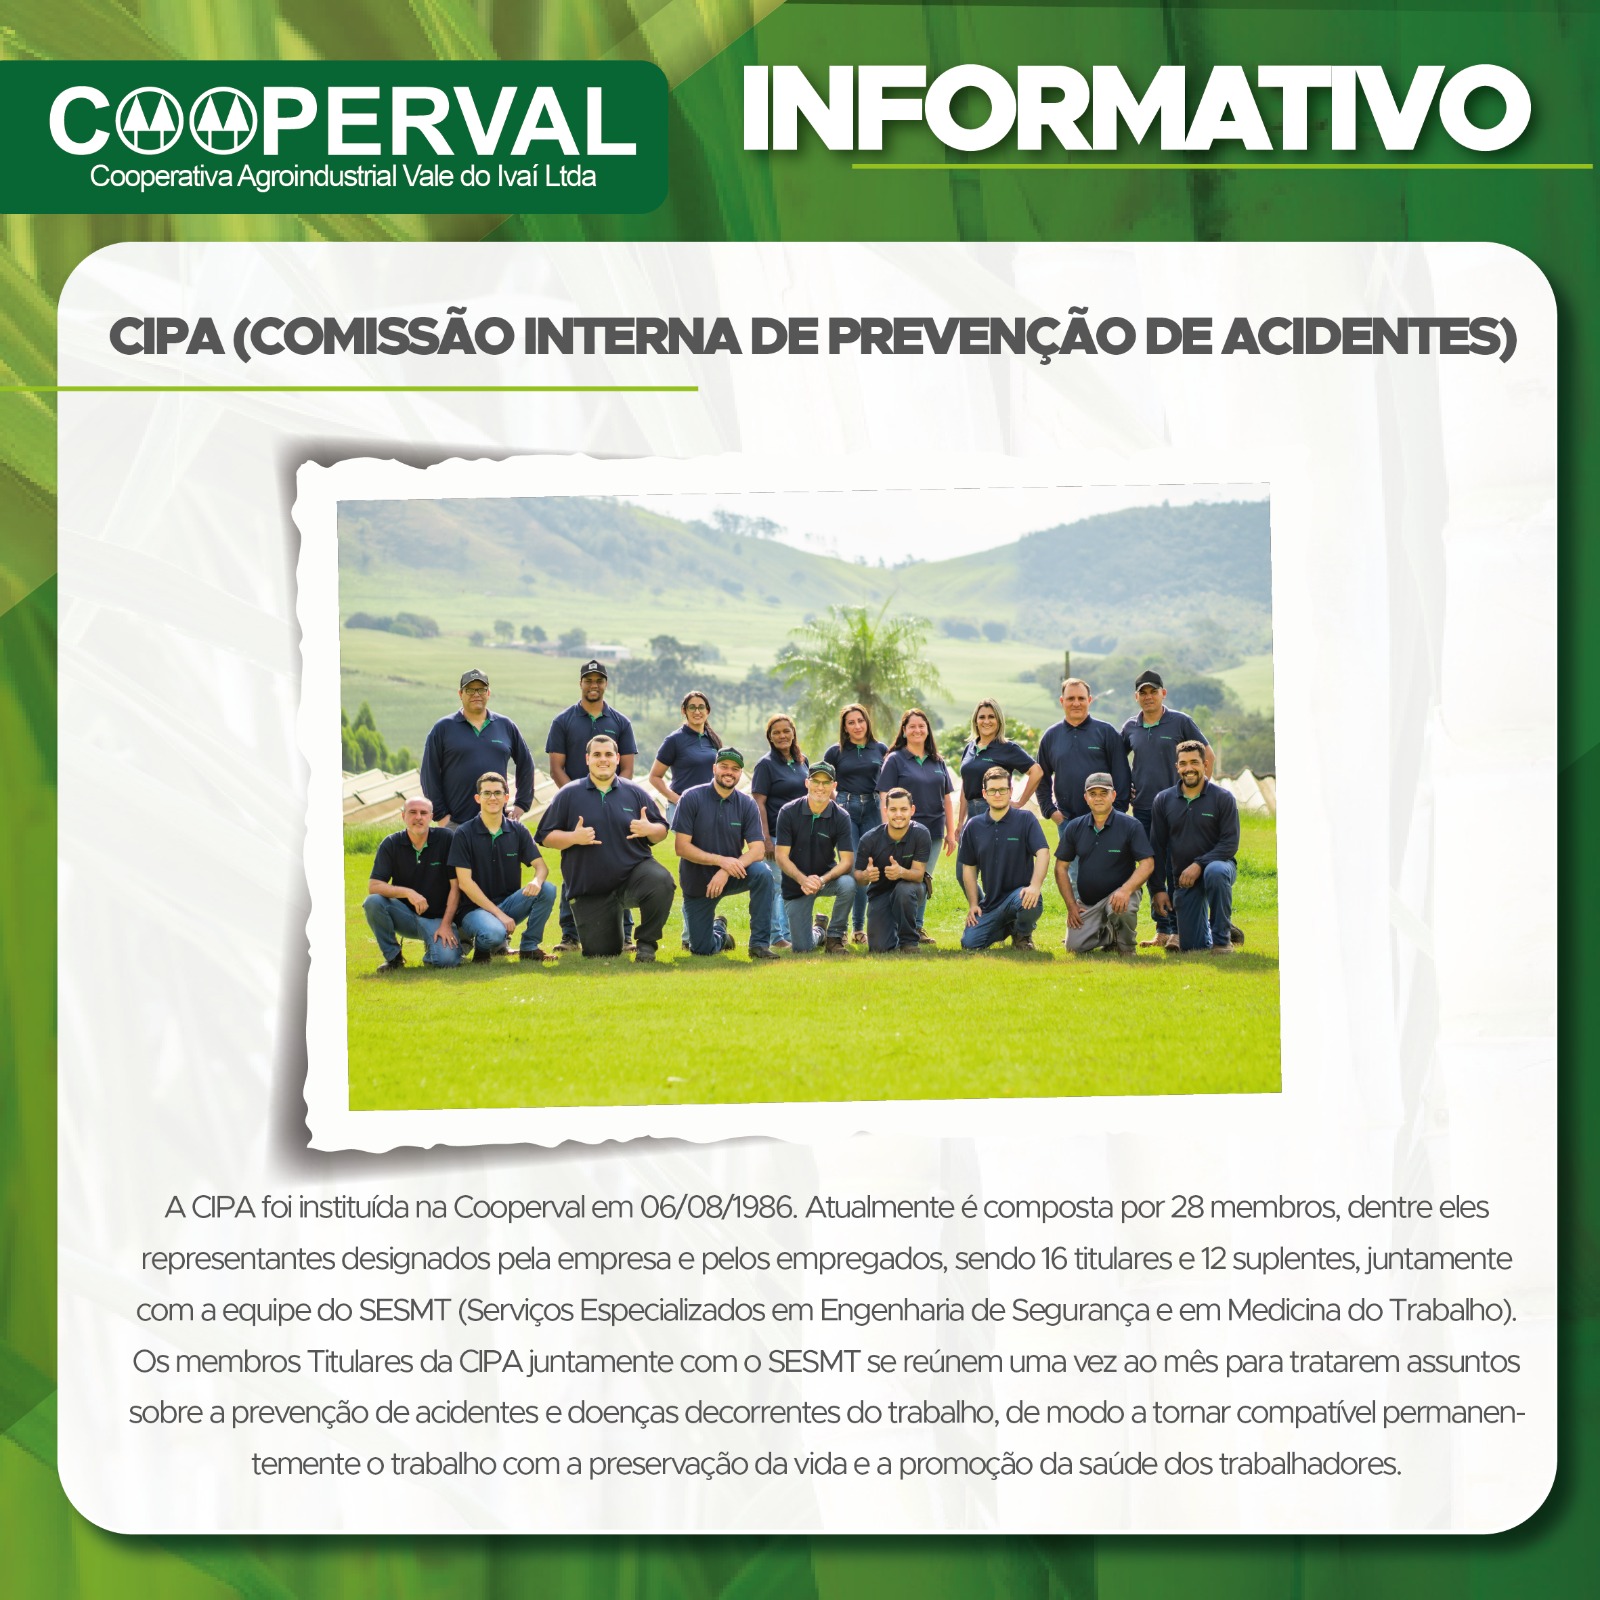 Comissão Interna de Prevenção de Acidentes - CIPA